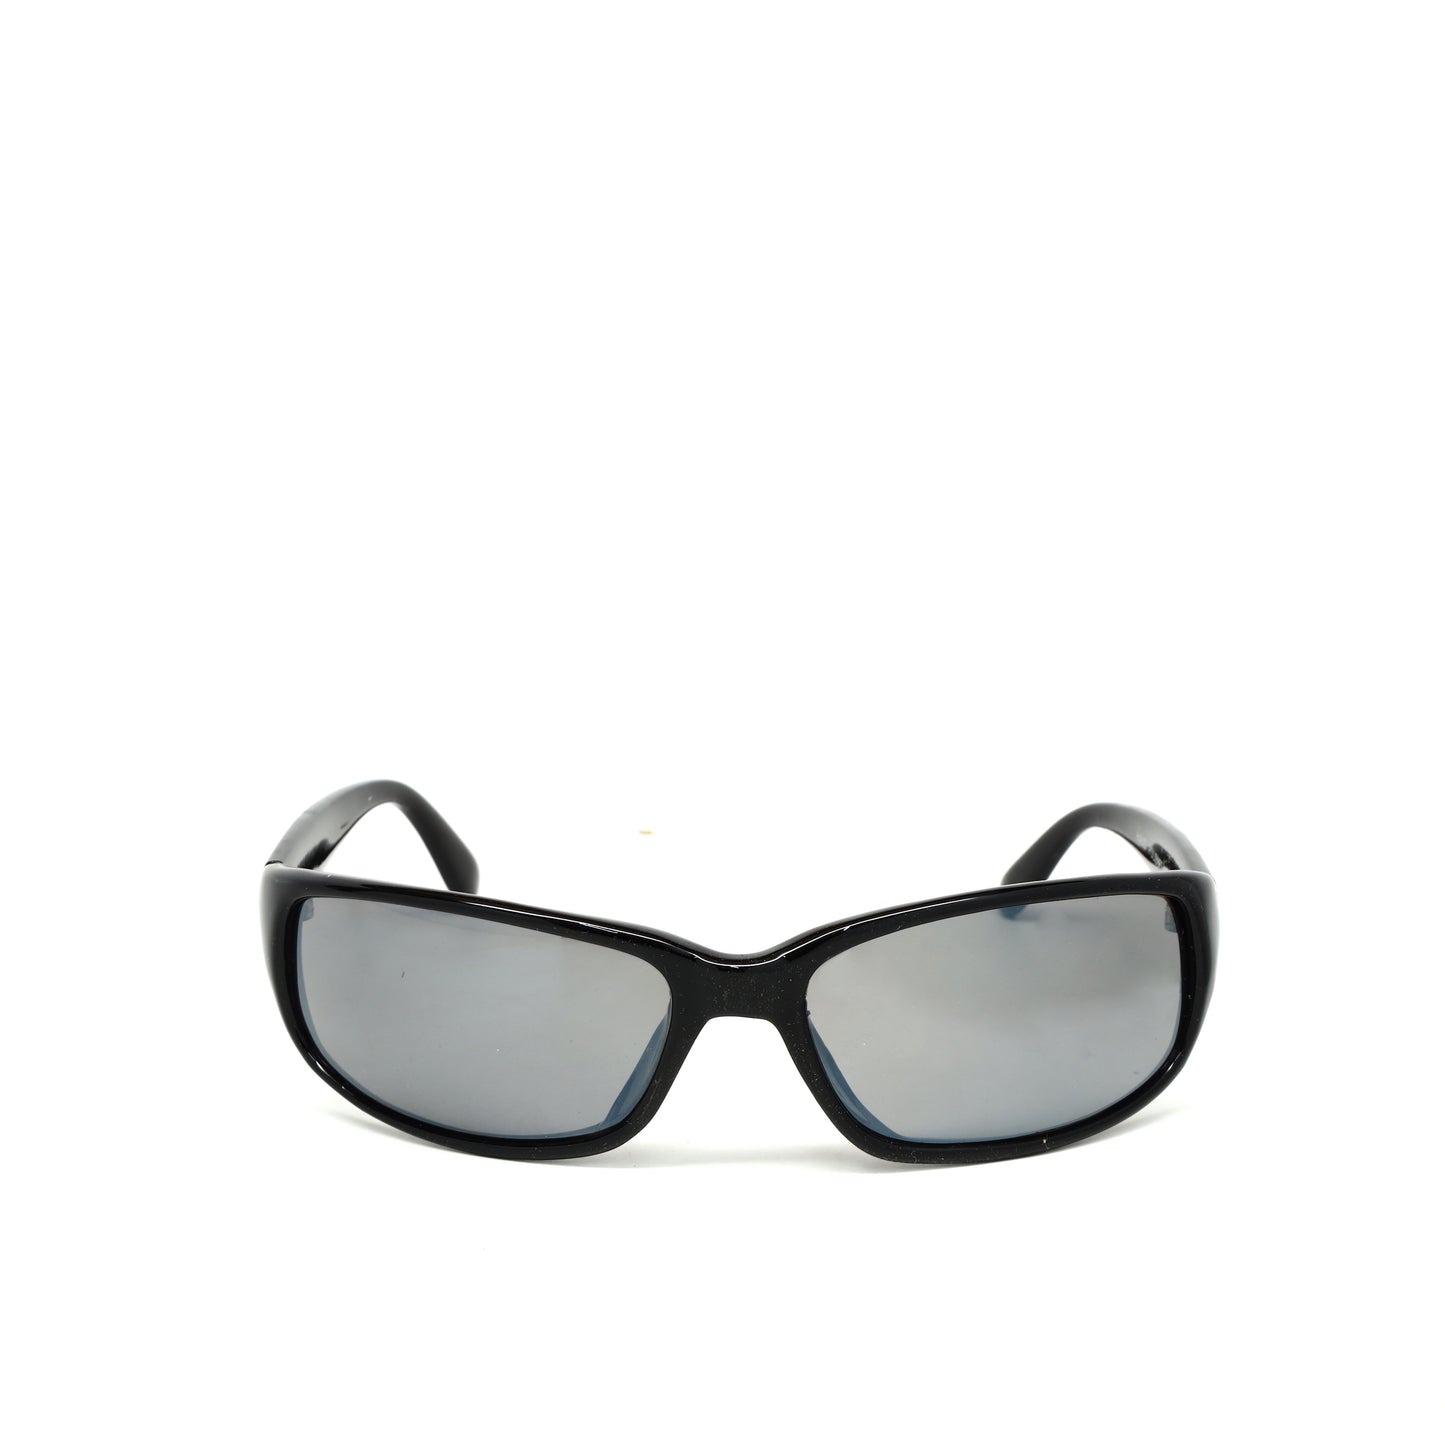 Prototype 9 Deadstock Oversized Rectangle Visor Sunglasses - Black